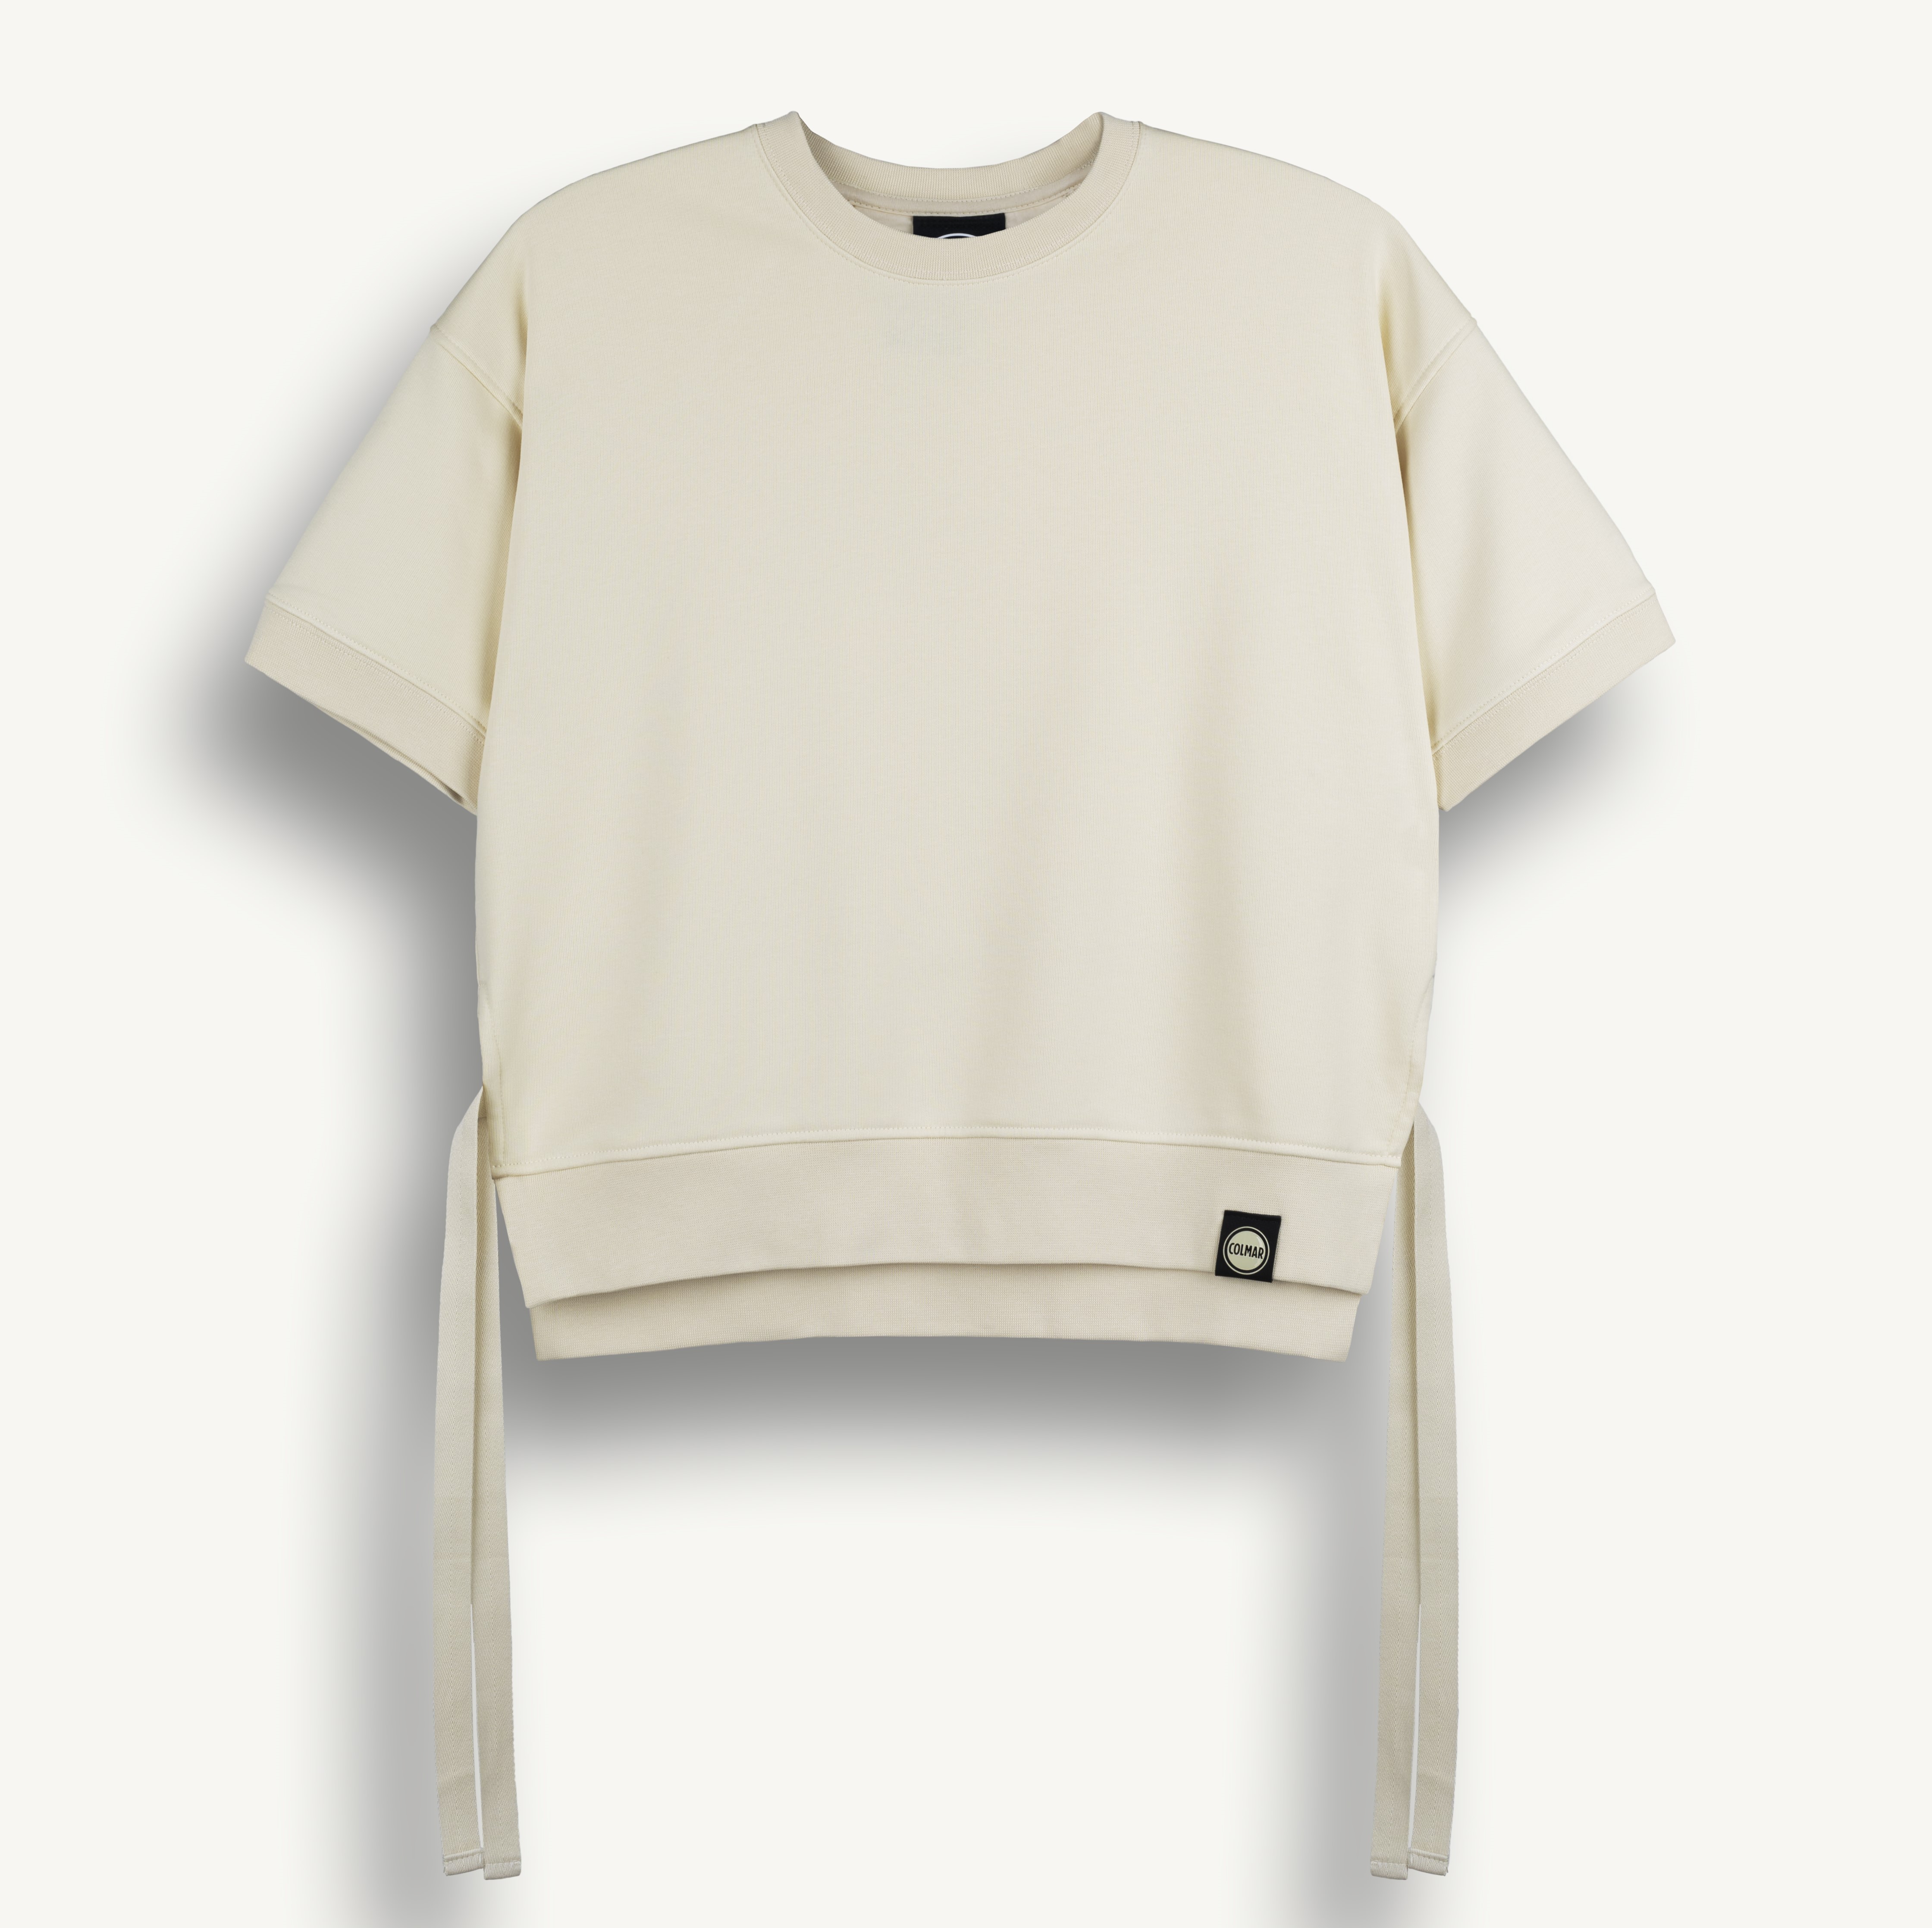 © COLMAR REVOLUTION kurzärmeliges Sweatshirt aus einer Baumwollmischung